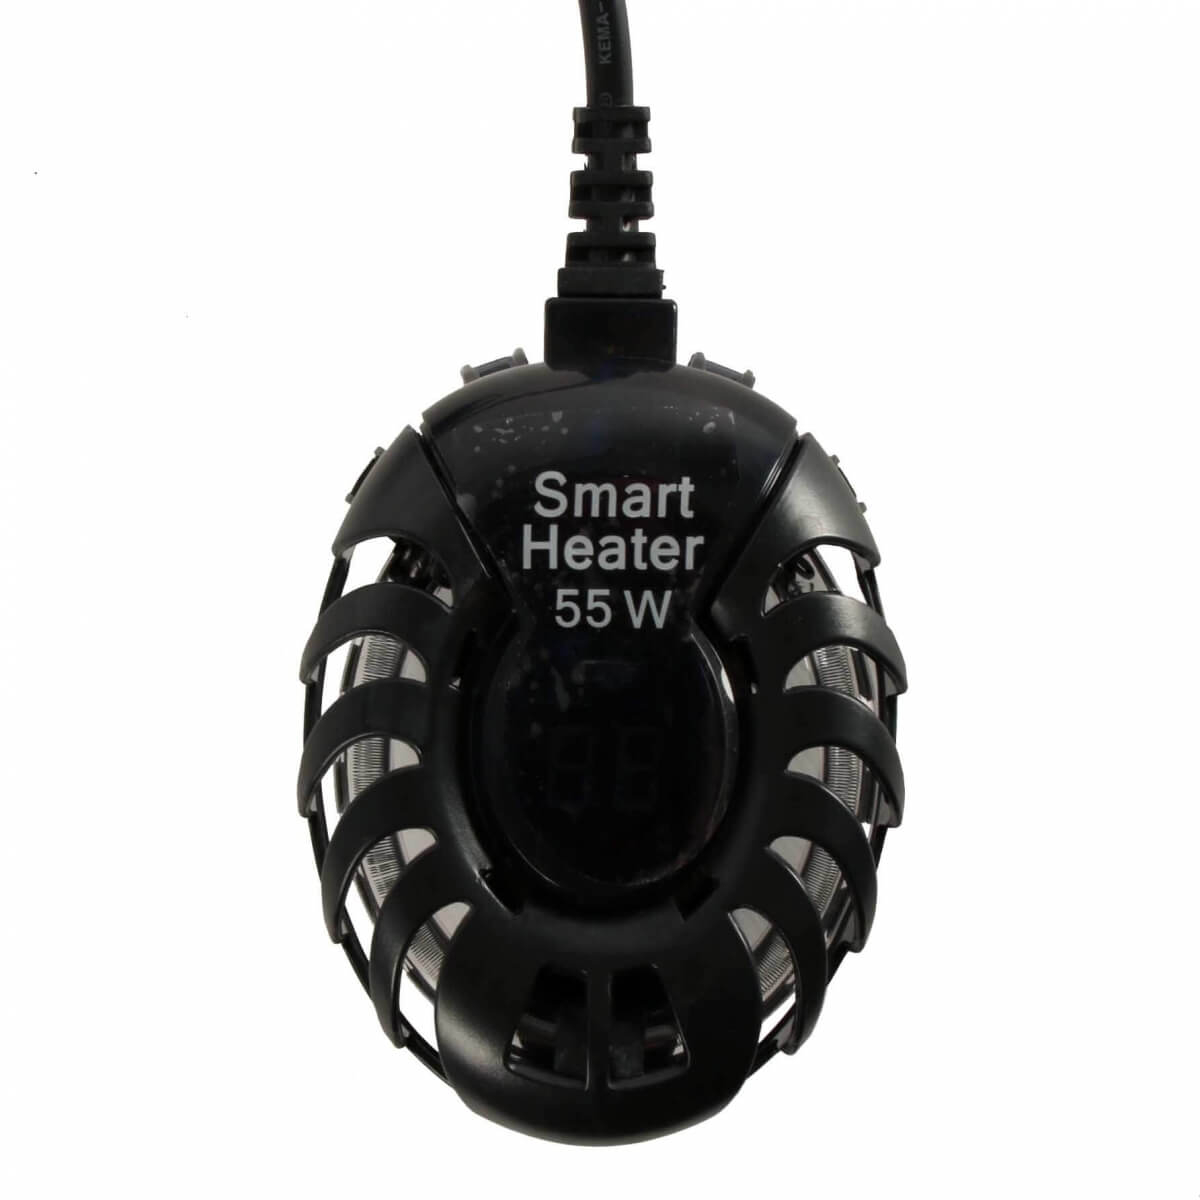 Chauffage smart heater (réglage température extérieure et affichage température du bac)